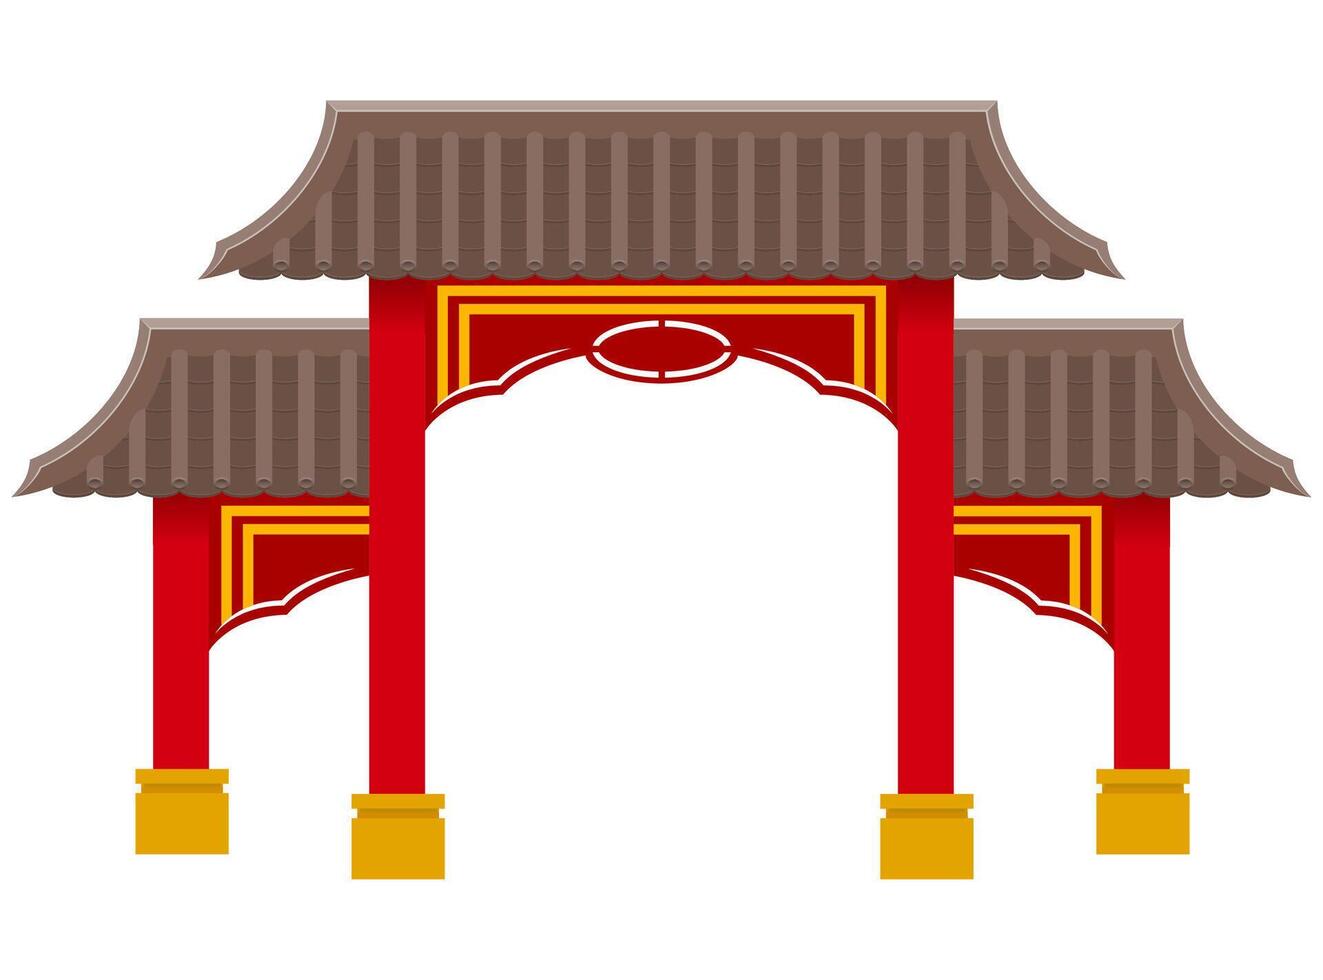 portão chinês para entrar em um templo ou pagode com colunas e uma ilustração vetorial de telhado isolada no fundo vetor